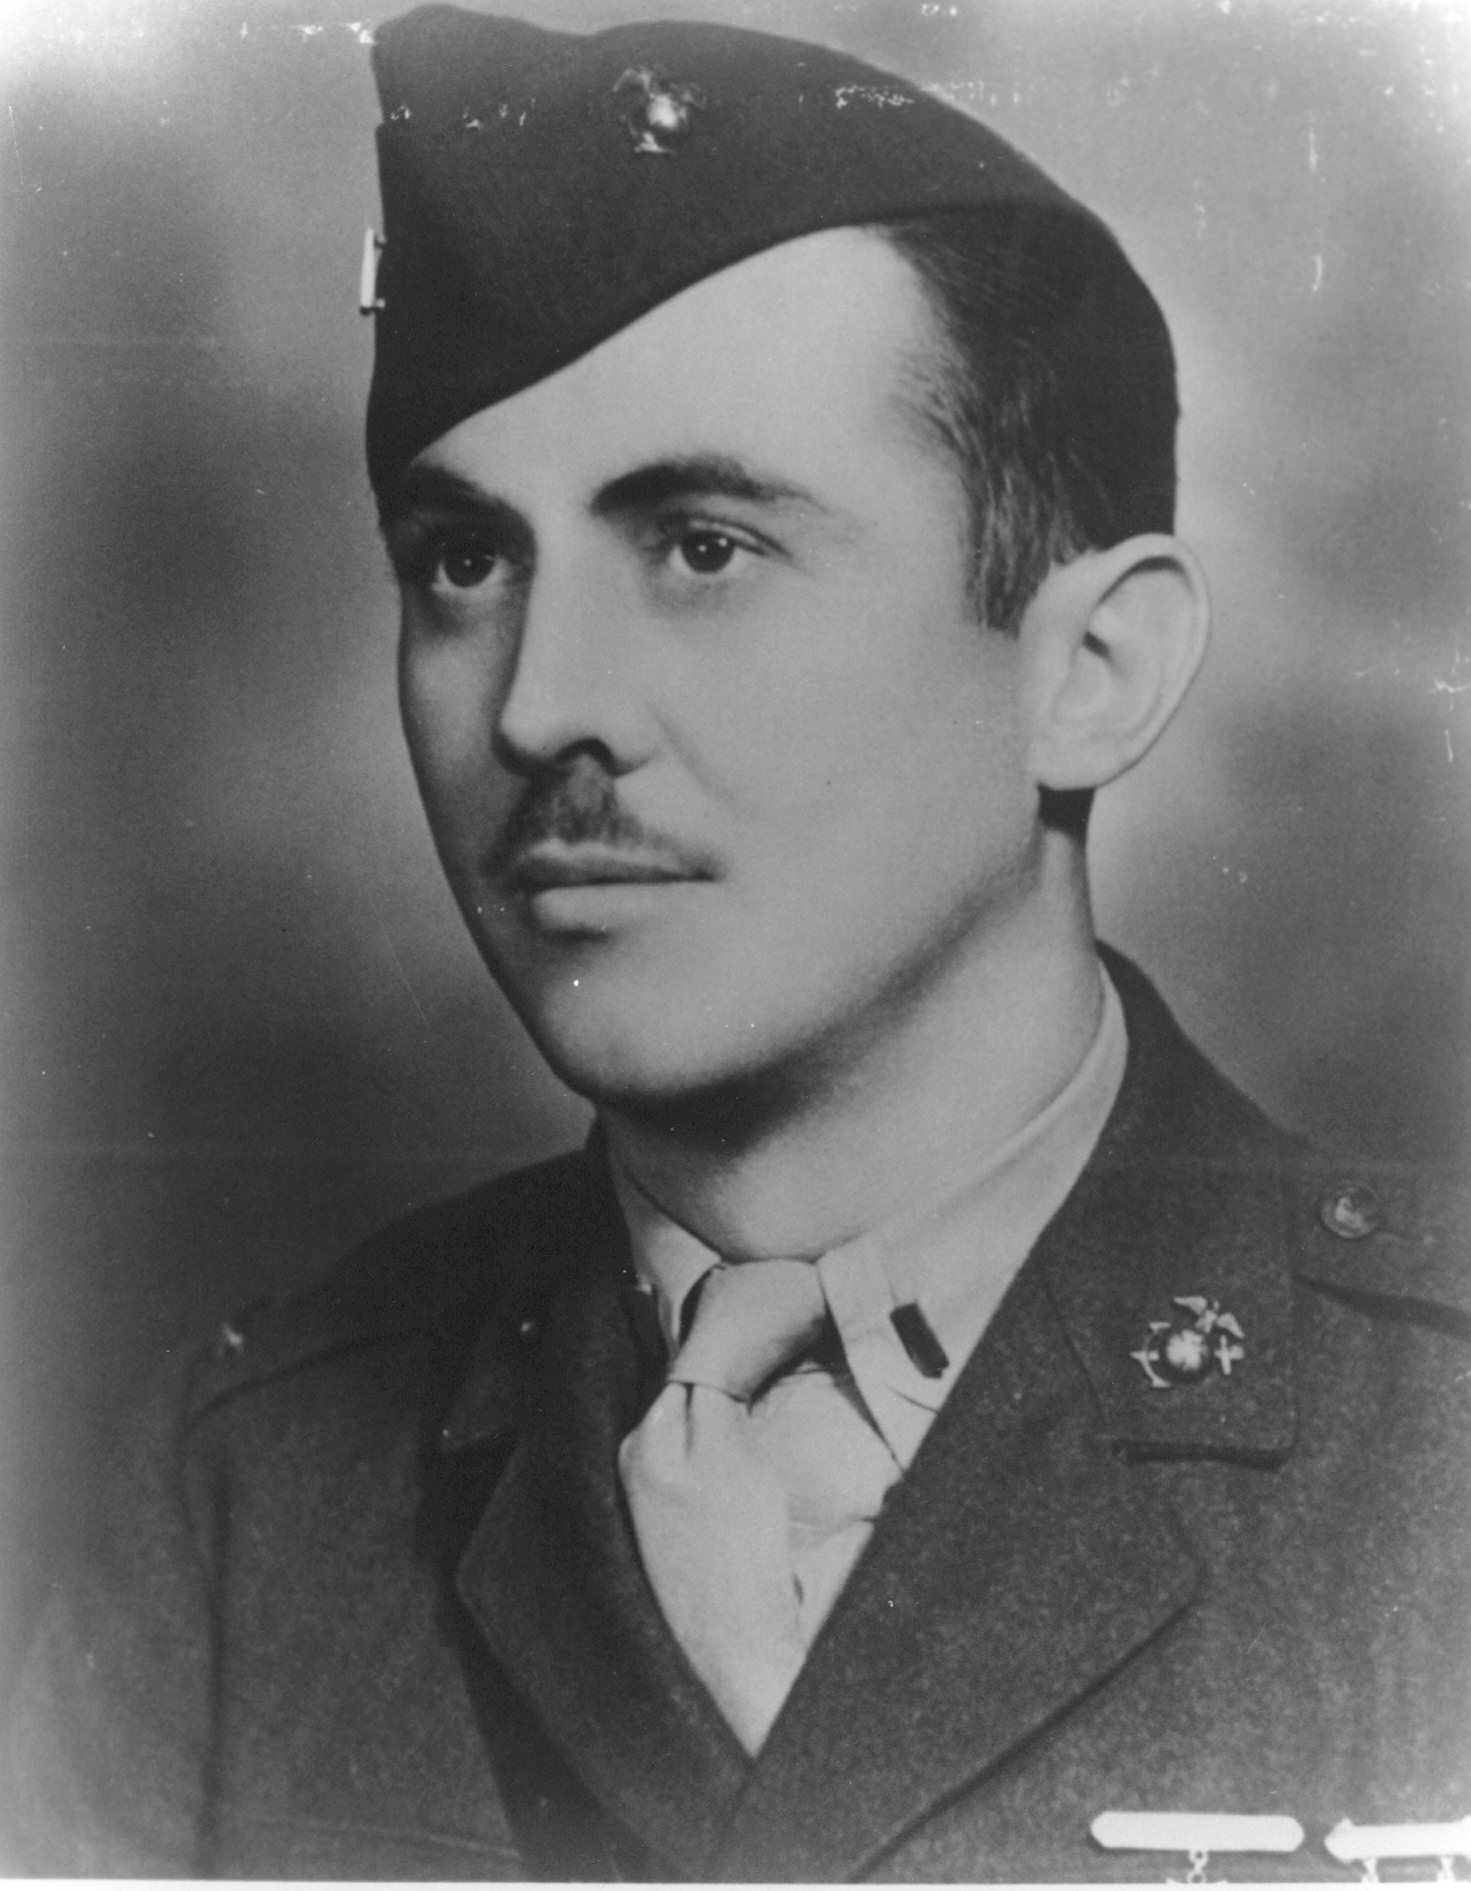 1st Lt W.D. Hawkins